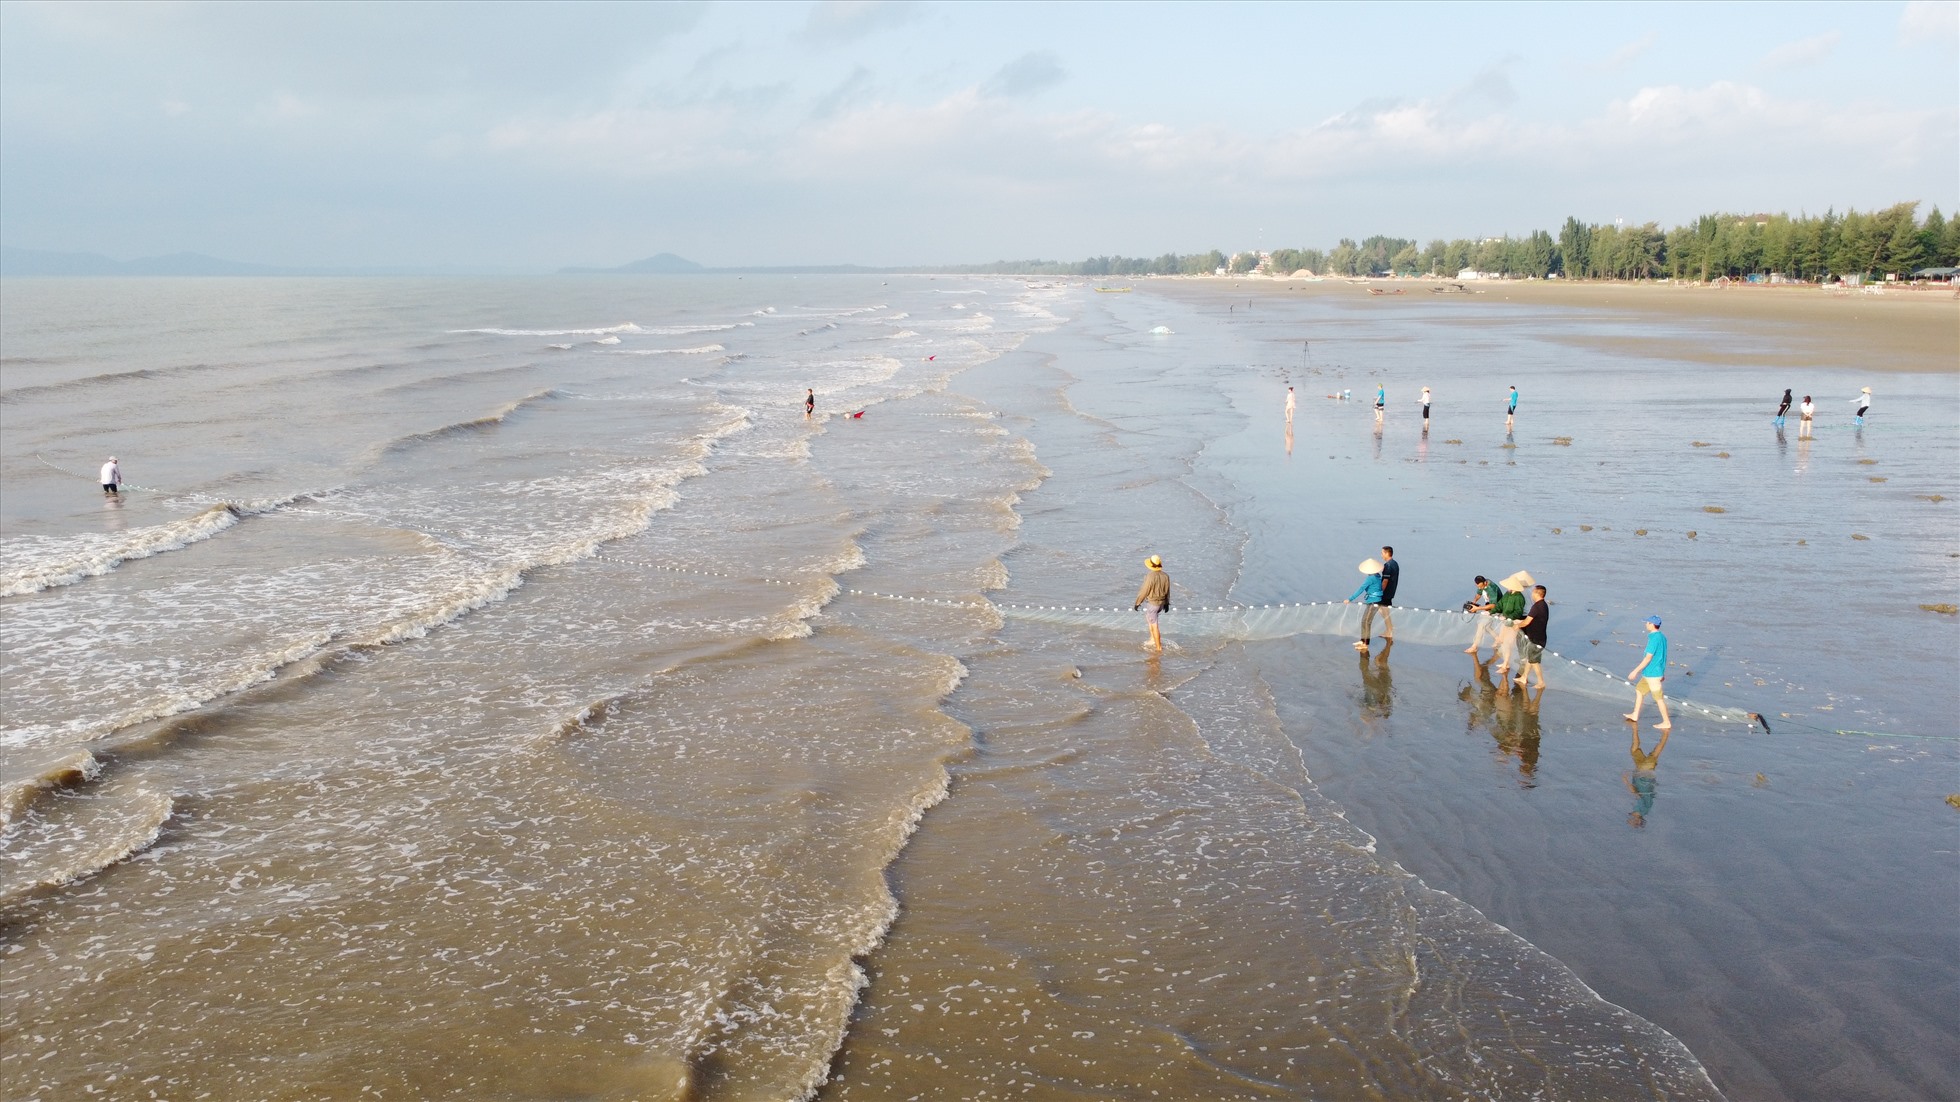 Bãi biển Trà Cổ giữ nét hoang sơ được coi là độc nhất vô nhị trong hệ thống biển đảo Việt Nam.